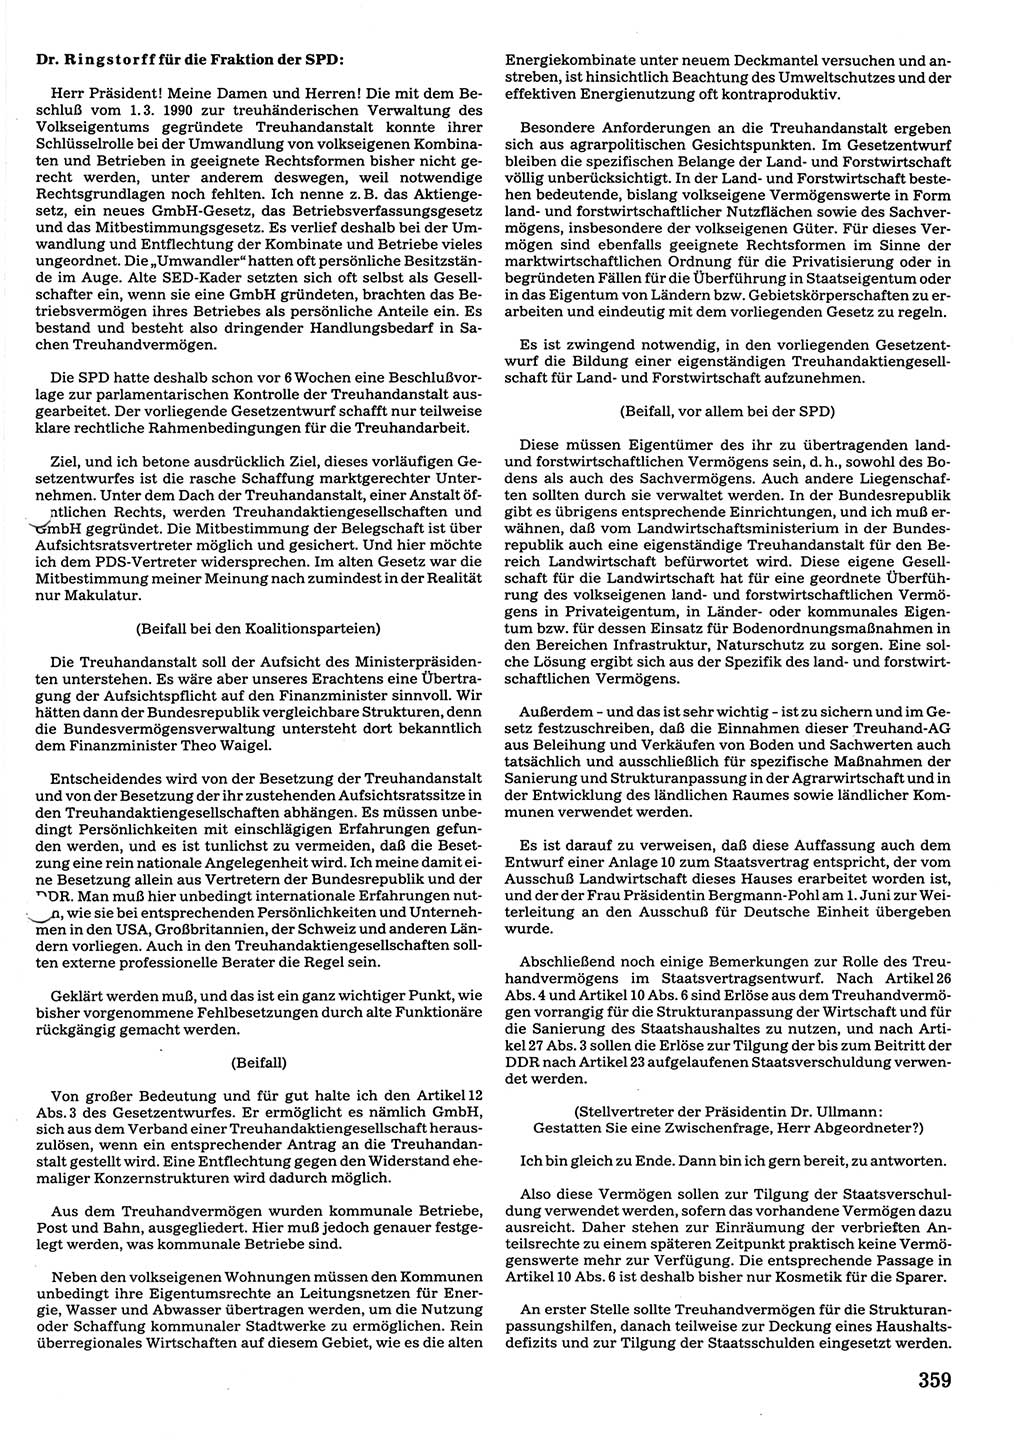 Tagungen der Volkskammer (VK) der Deutschen Demokratischen Republik (DDR), 10. Wahlperiode 1990, Seite 359 (VK. DDR 10. WP. 1990, Prot. Tg. 1-38, 5.4.-2.10.1990, S. 359)